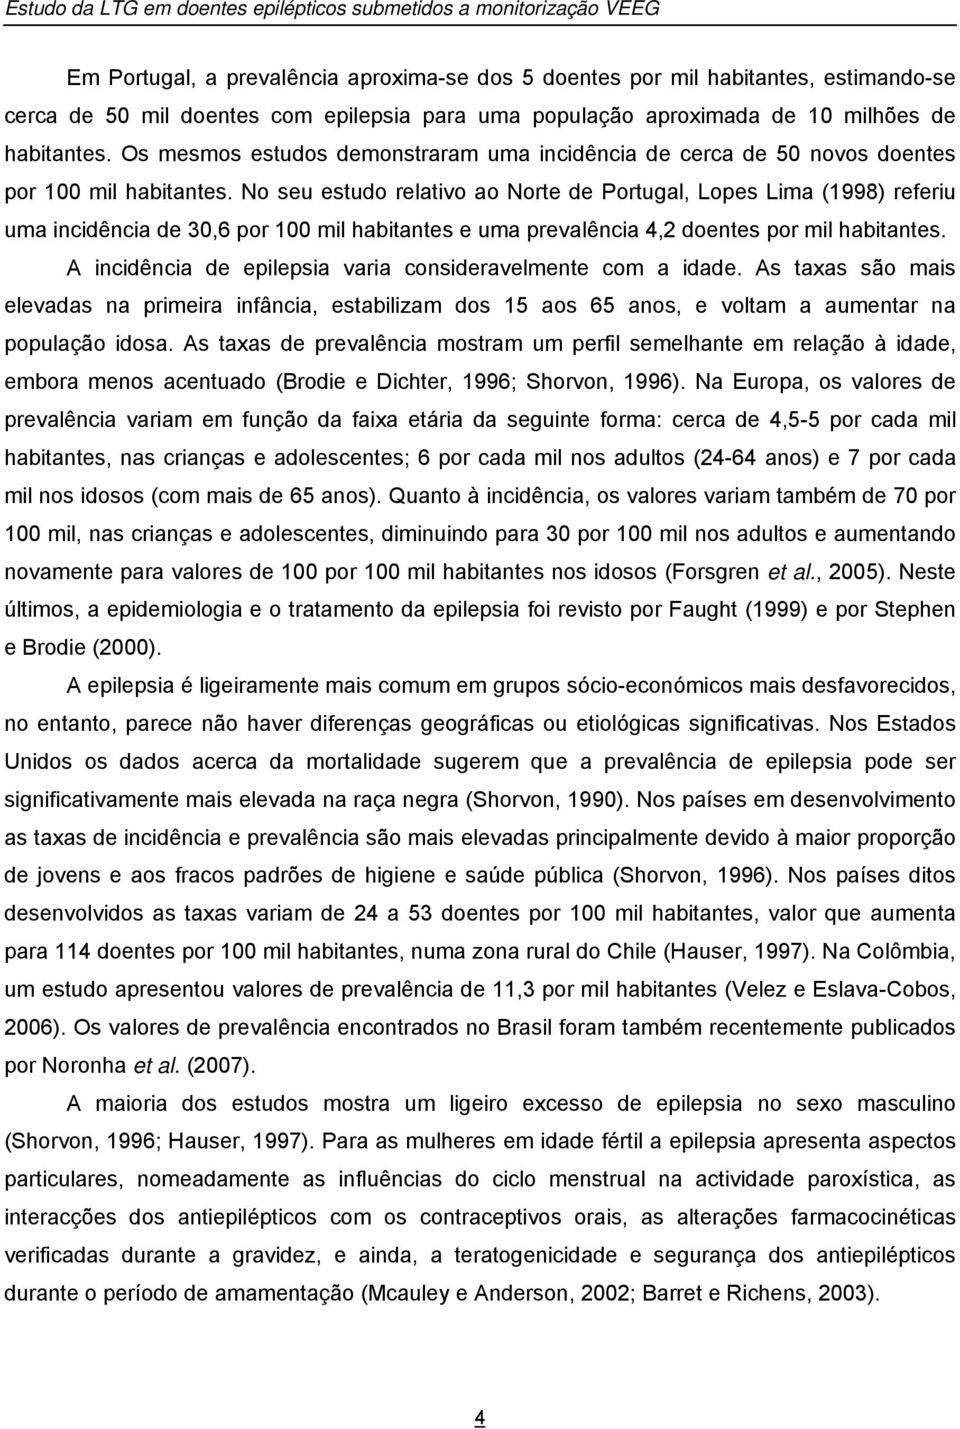 No seu estudo relativo ao Norte de Portugal, Lopes Lima (1998) referiu uma incidência de 30,6 por 100 mil habitantes e uma prevalência 4,2 doentes por mil habitantes.